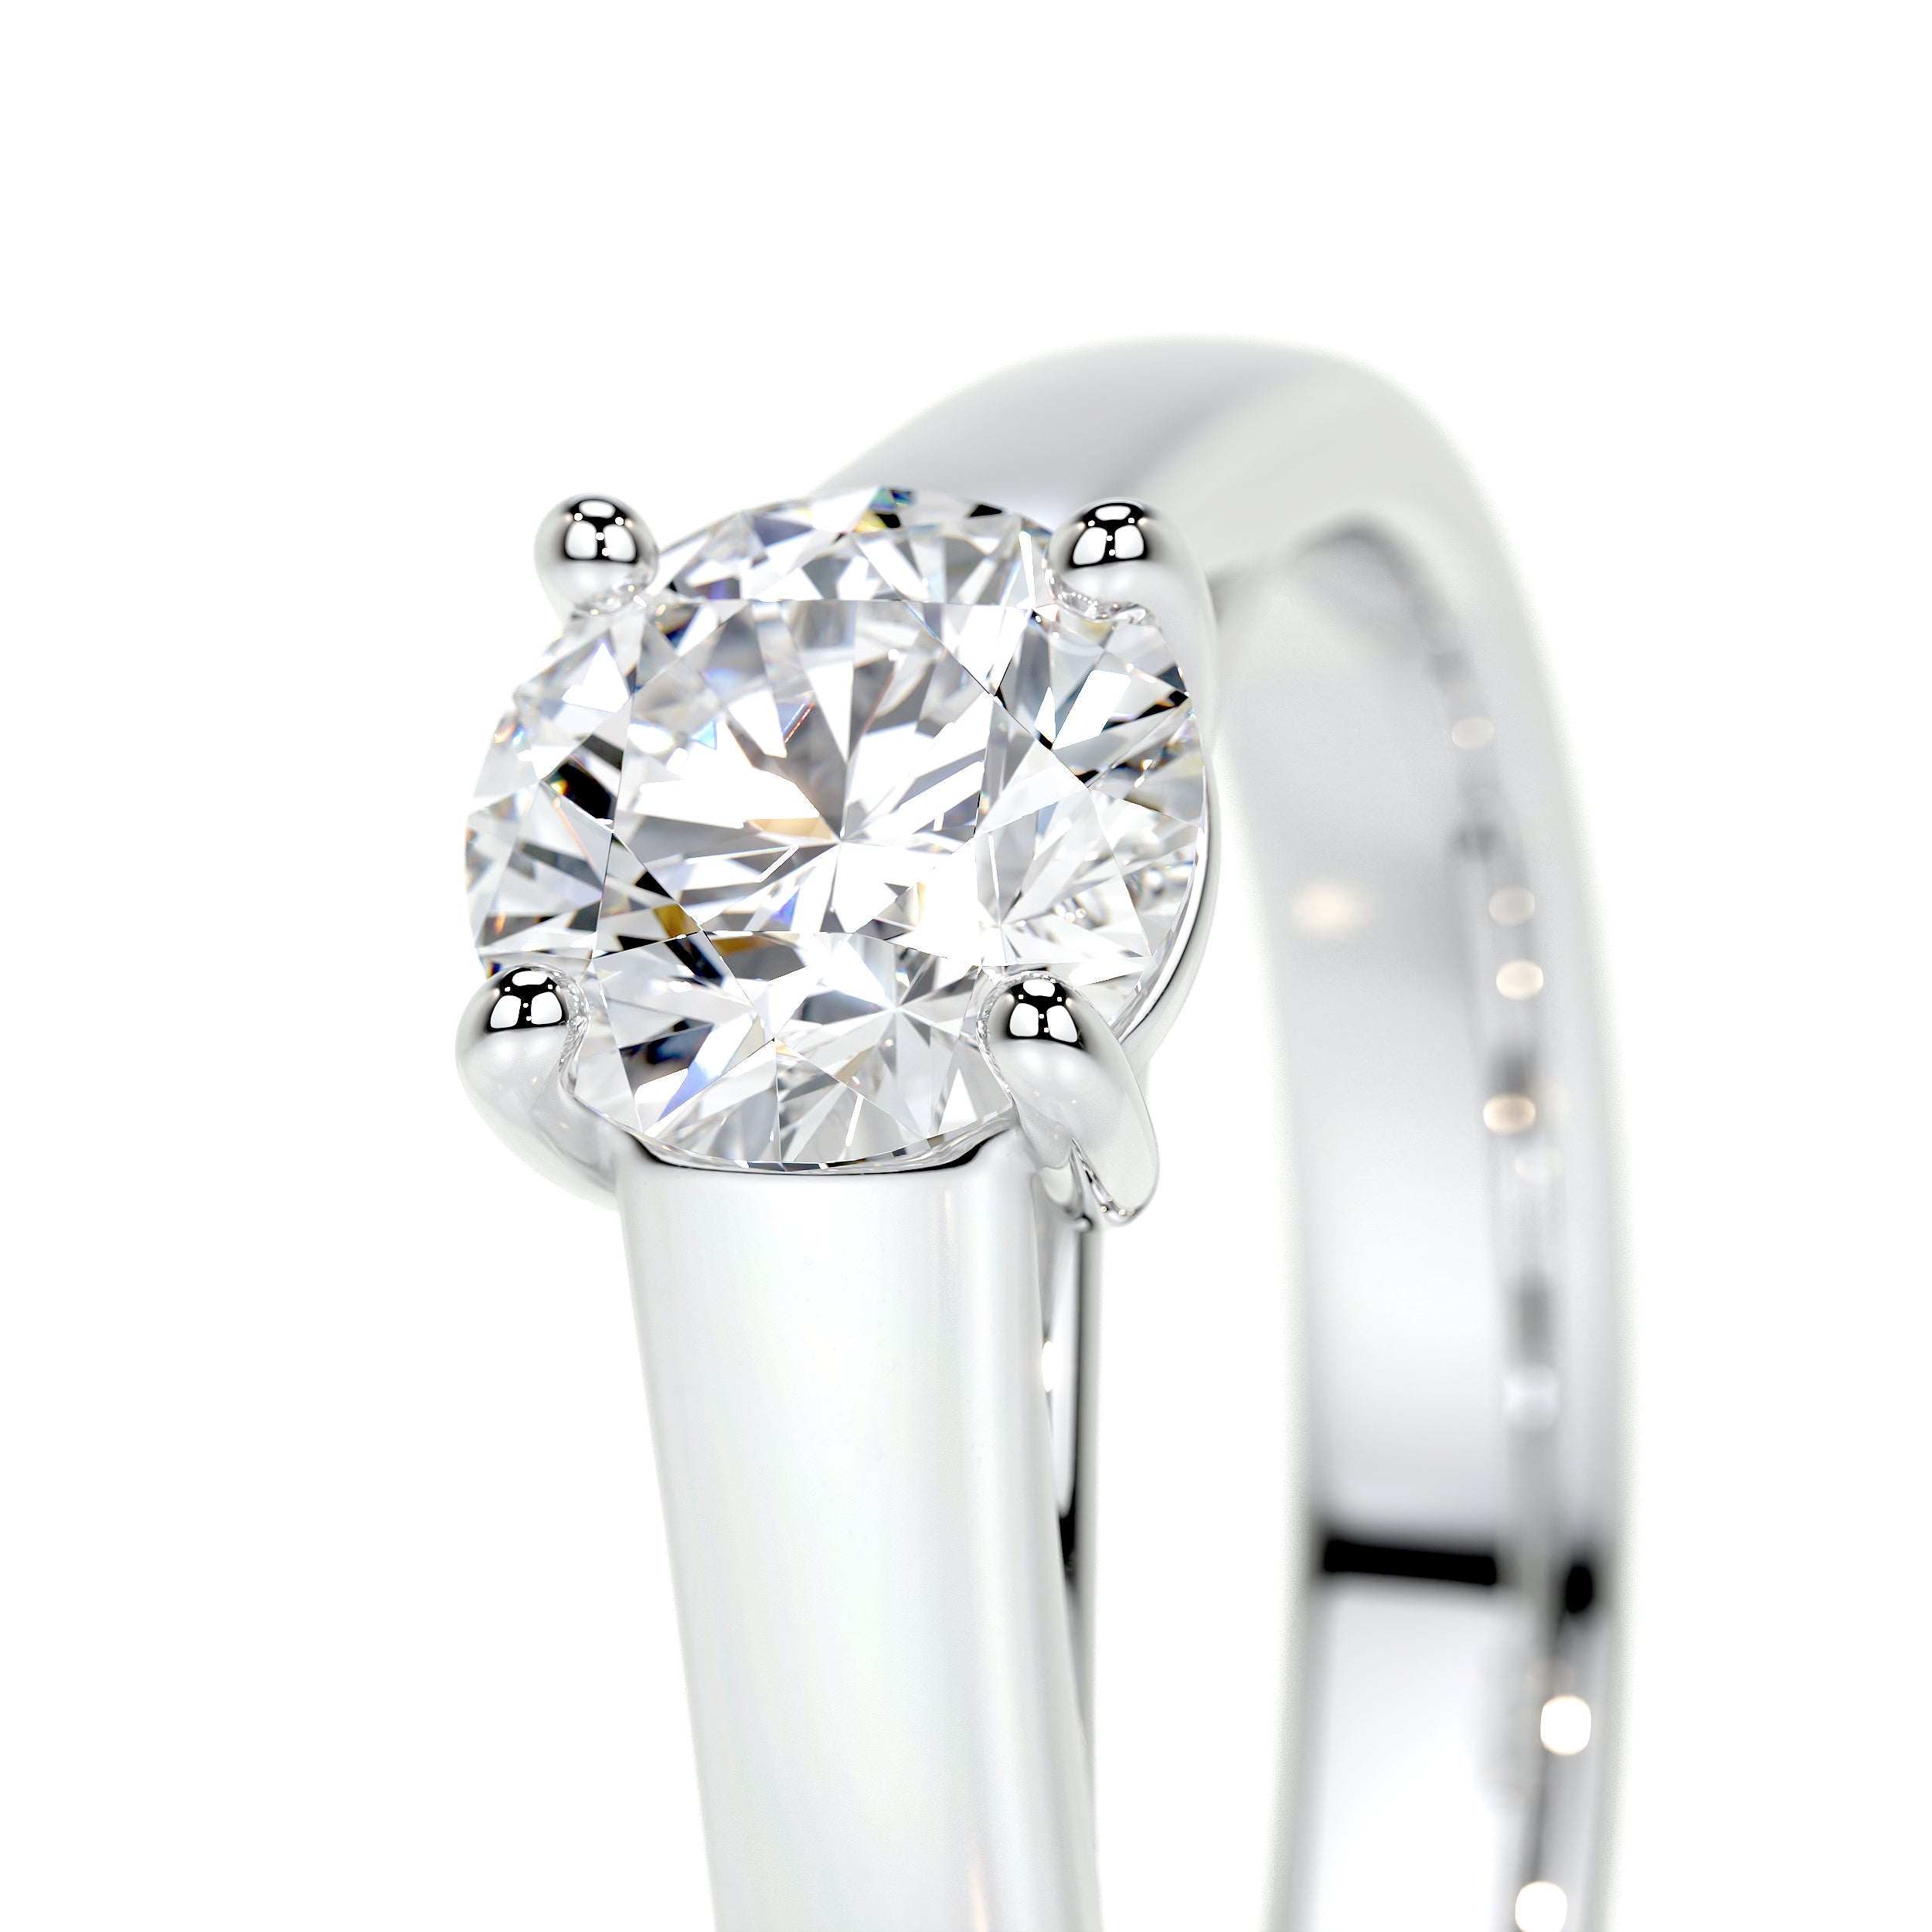 Nola Lab Grown Diamond Ring   (0.80 Carat) -18K White Gold